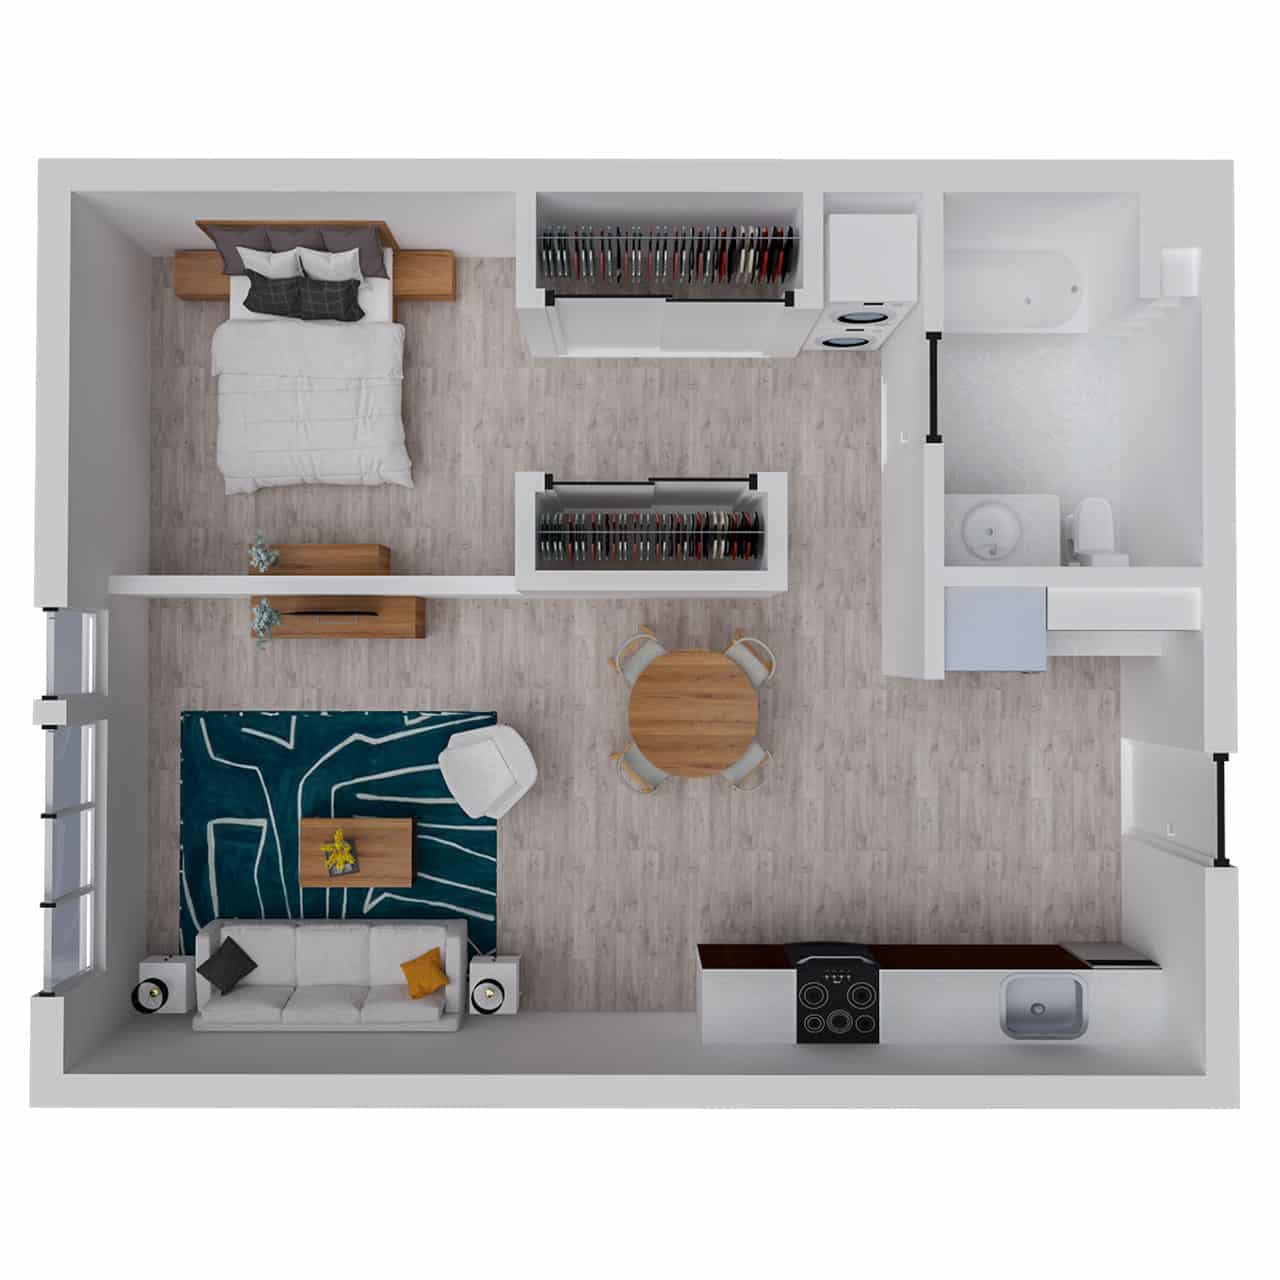 Attwell, A 9 Loft floor plan, 1 bedroom, 1 bath.